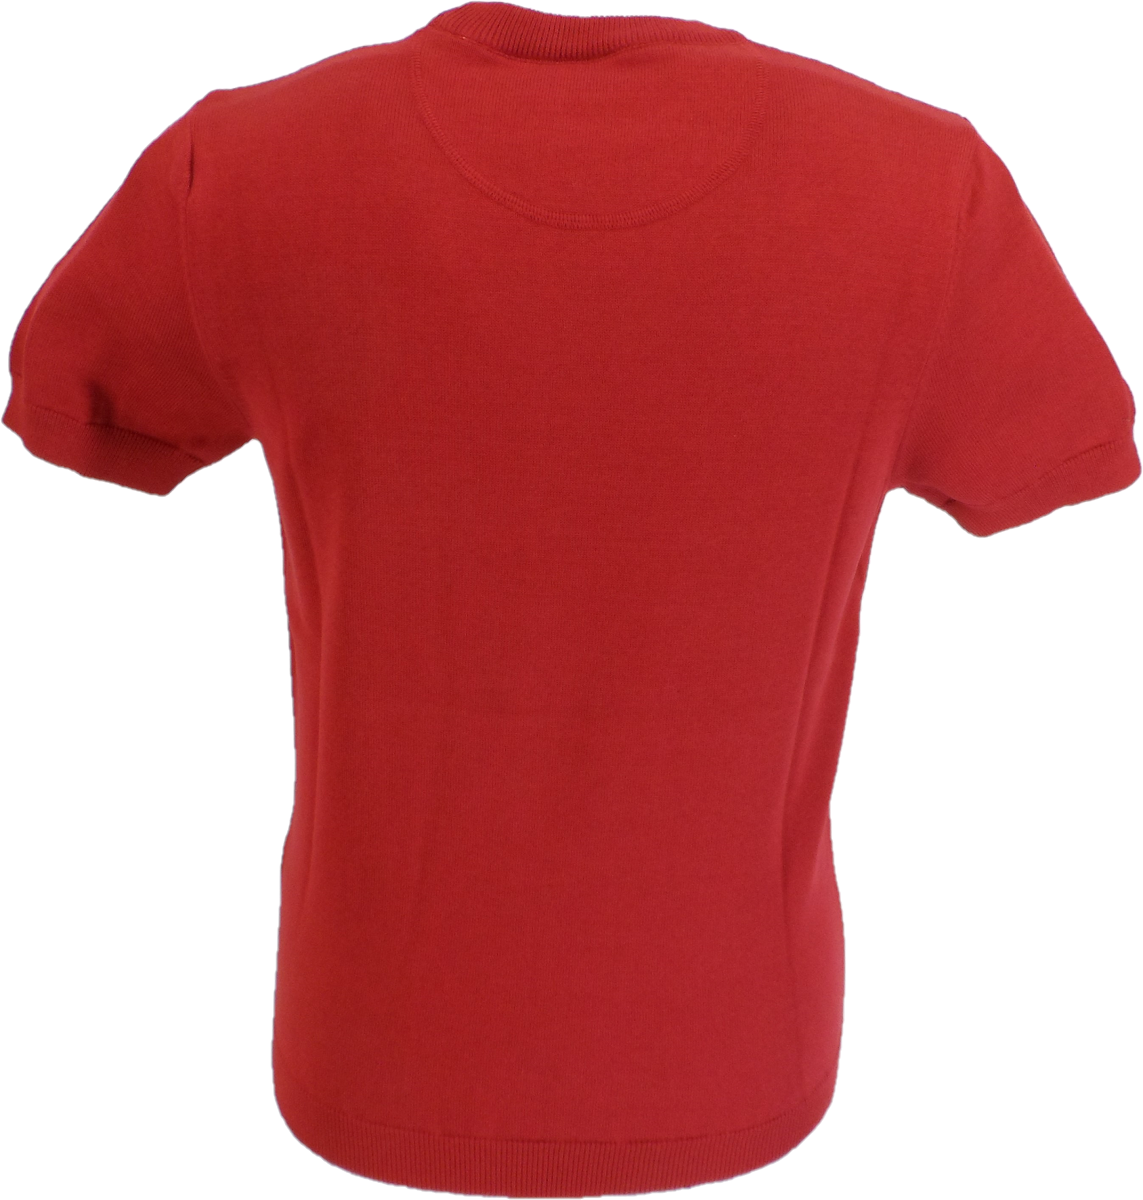 Camisetas de punto en V rojas para hombre de Ska & Soul